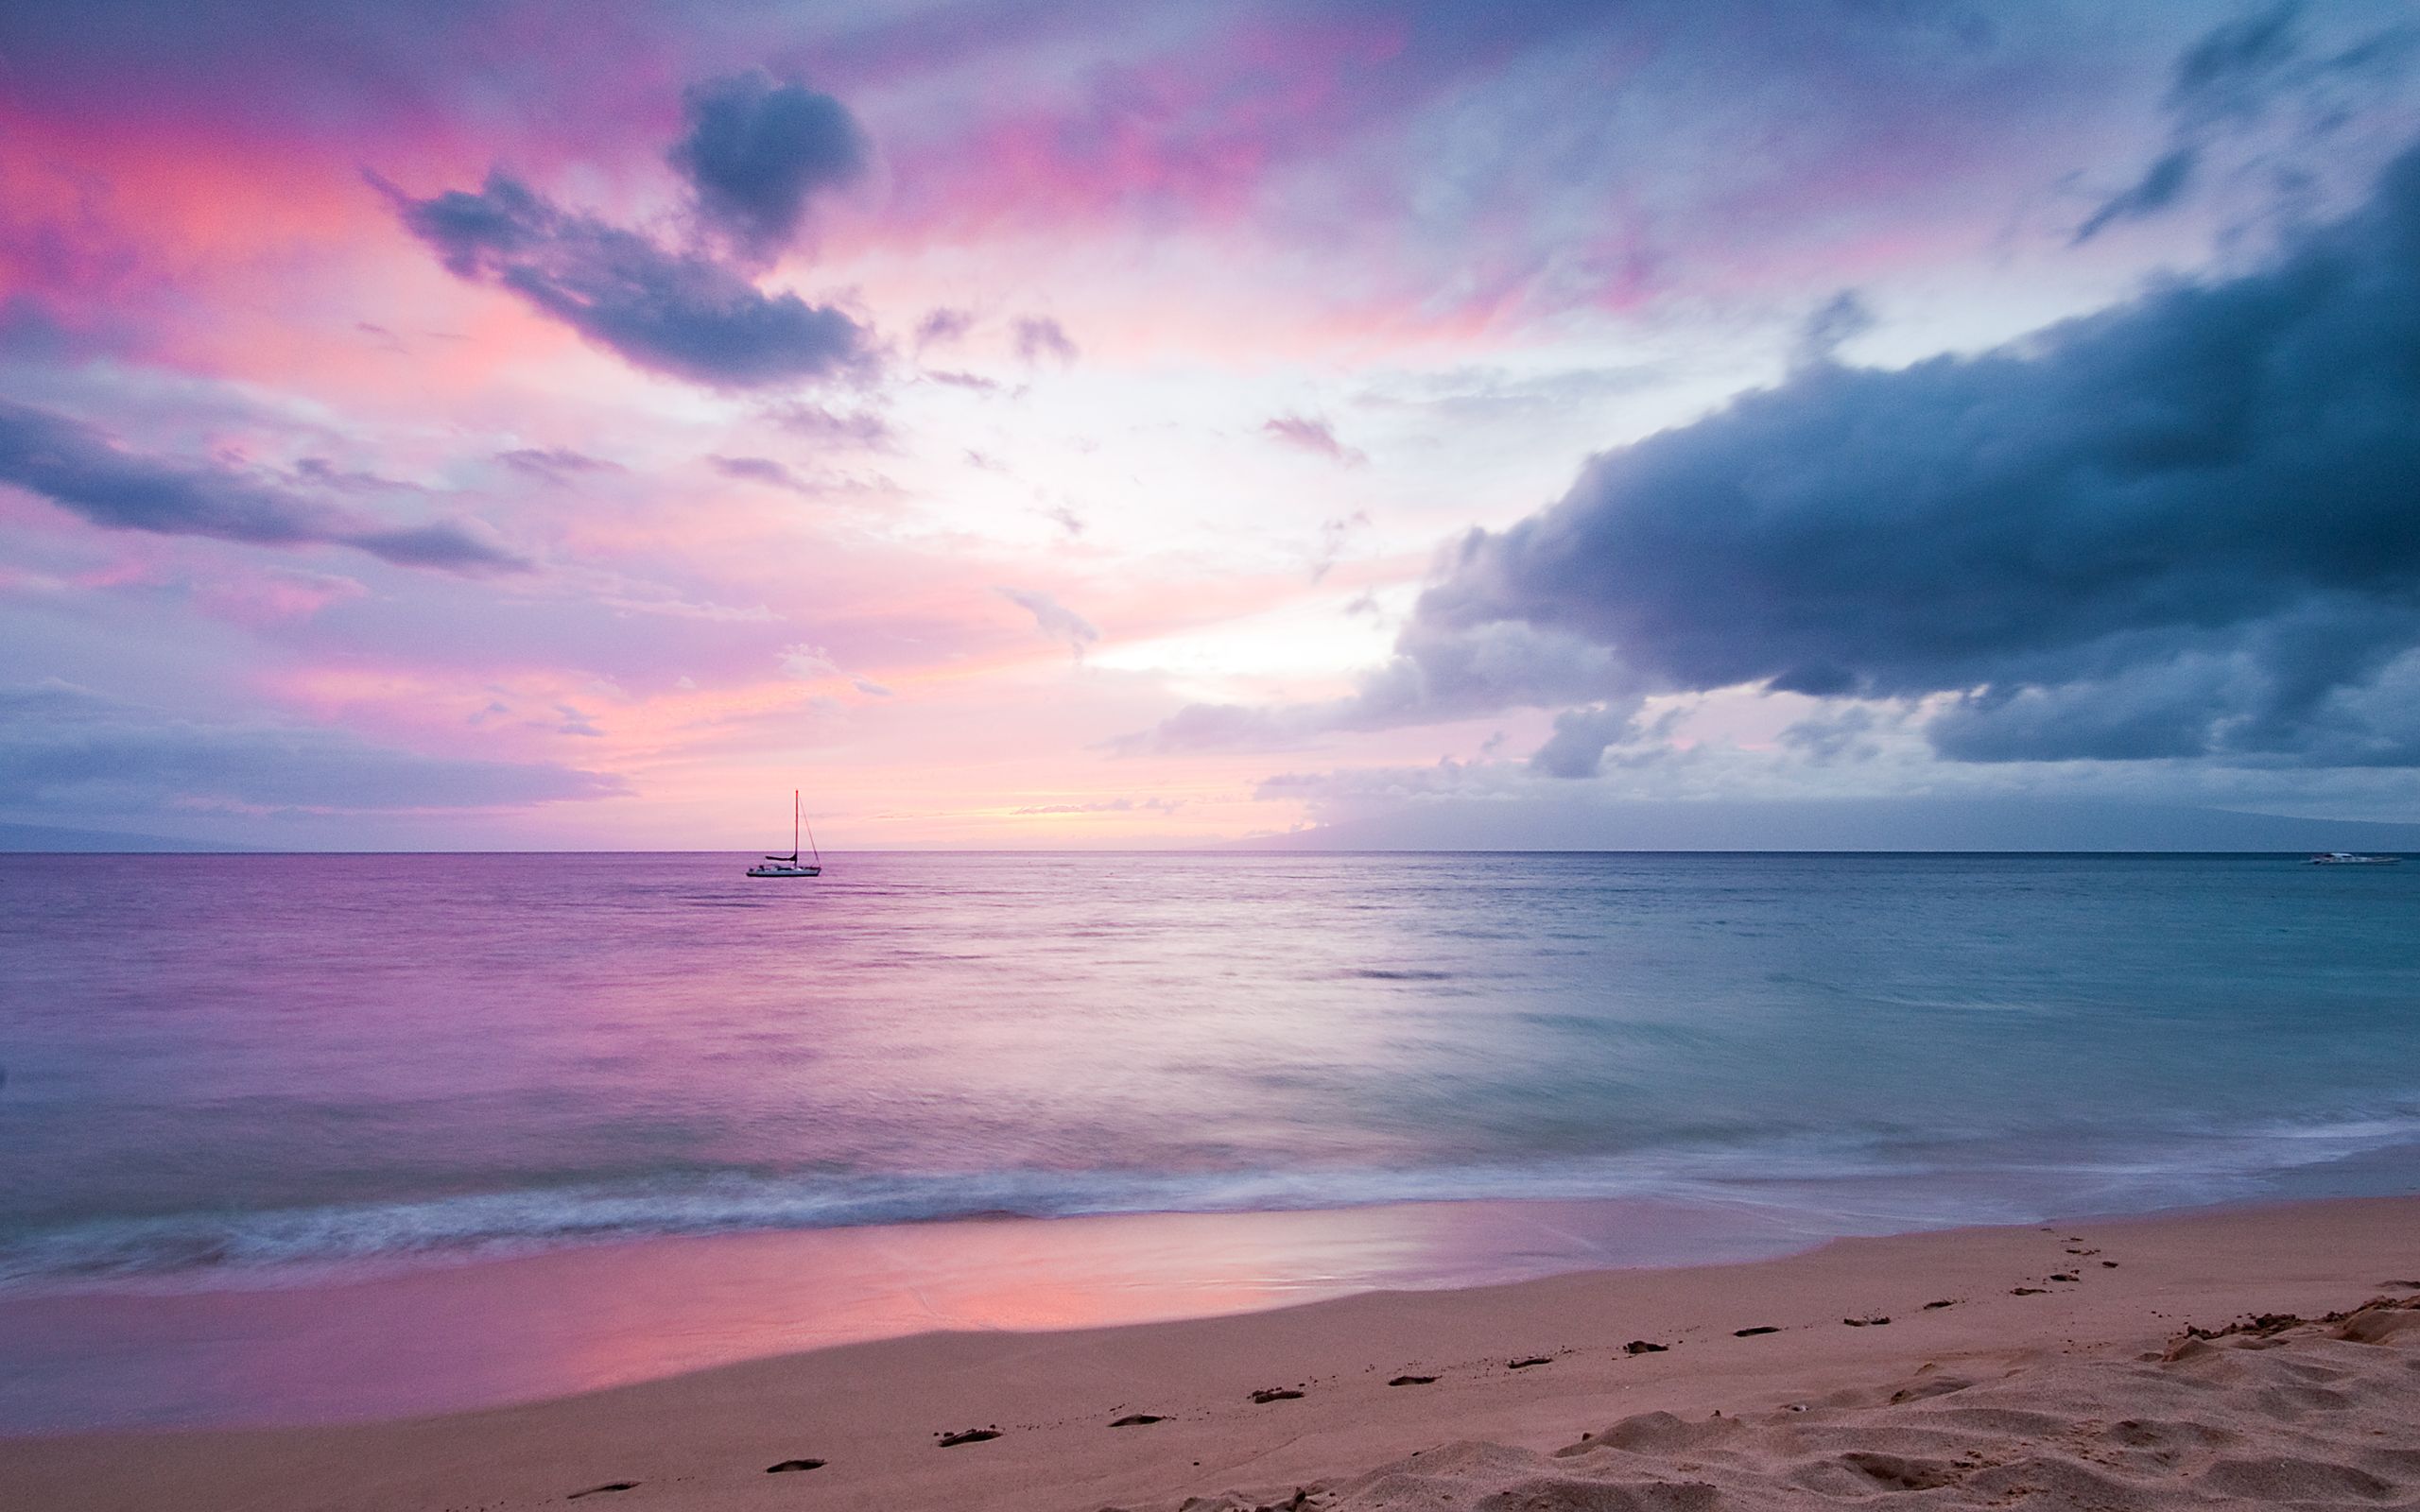 Beaches & Islands HD Wallpapers | Beach Desktop Backgrounds,Stock ...